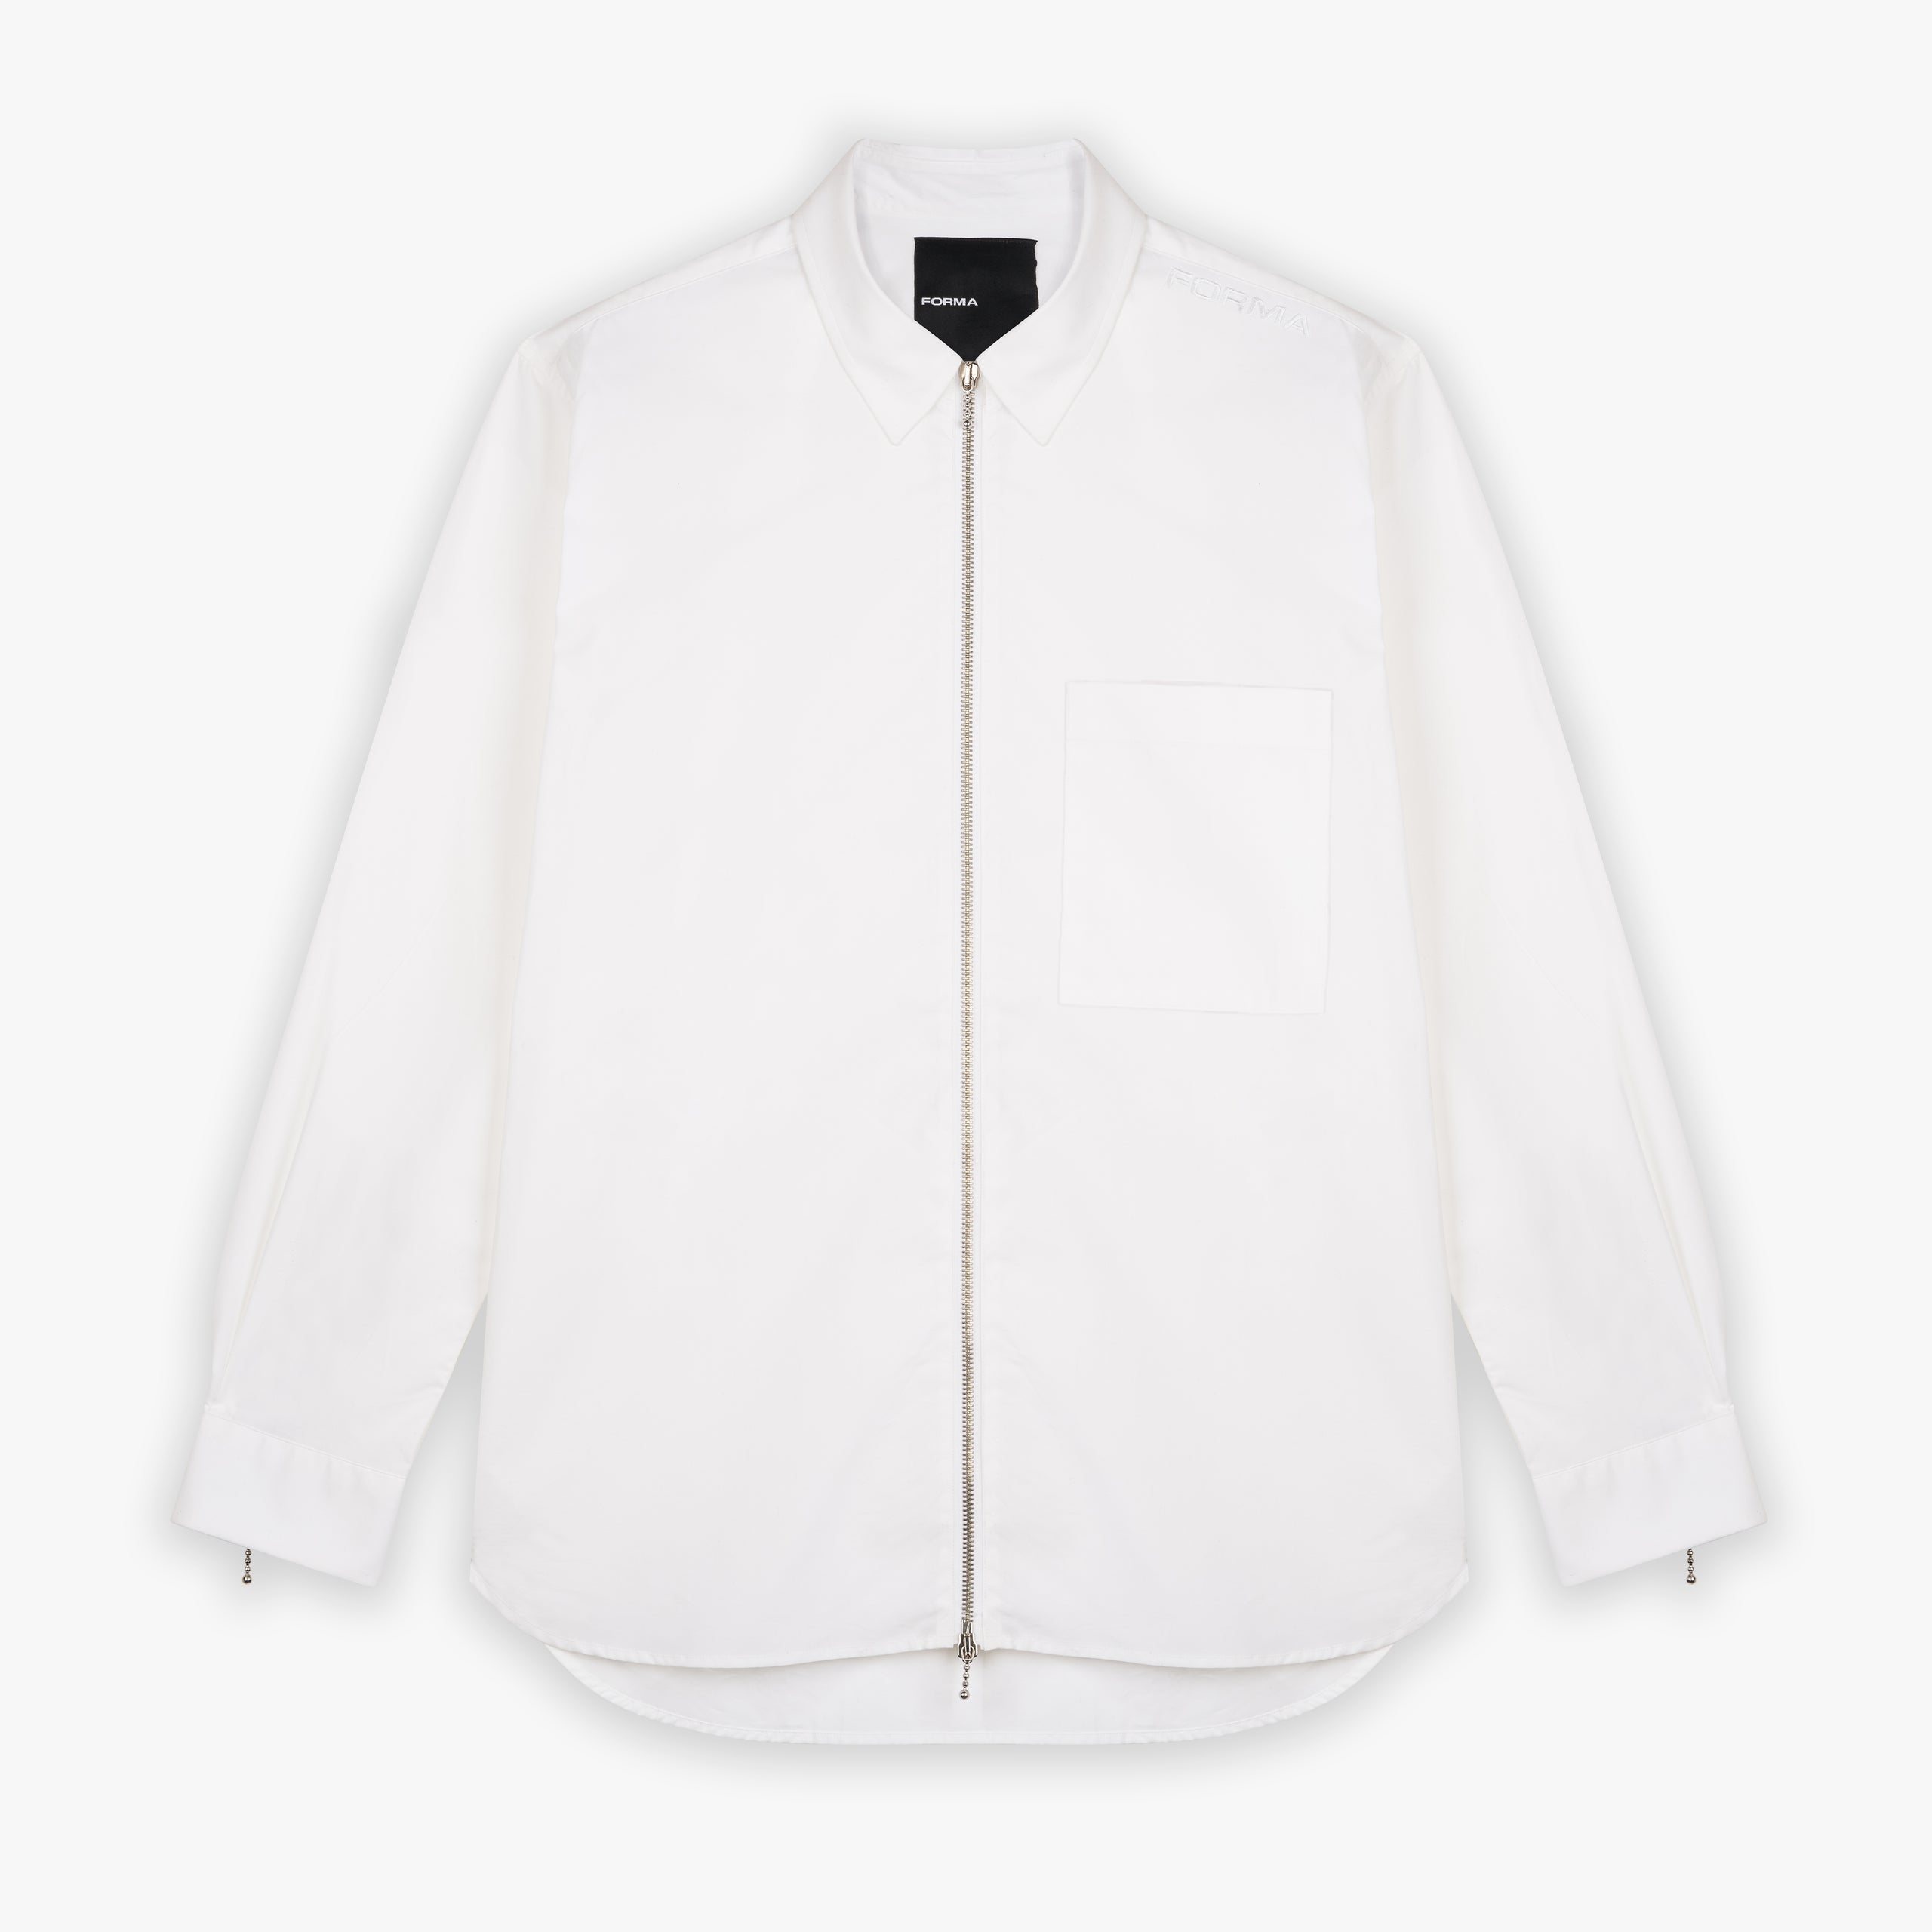 Forma zip shirt white